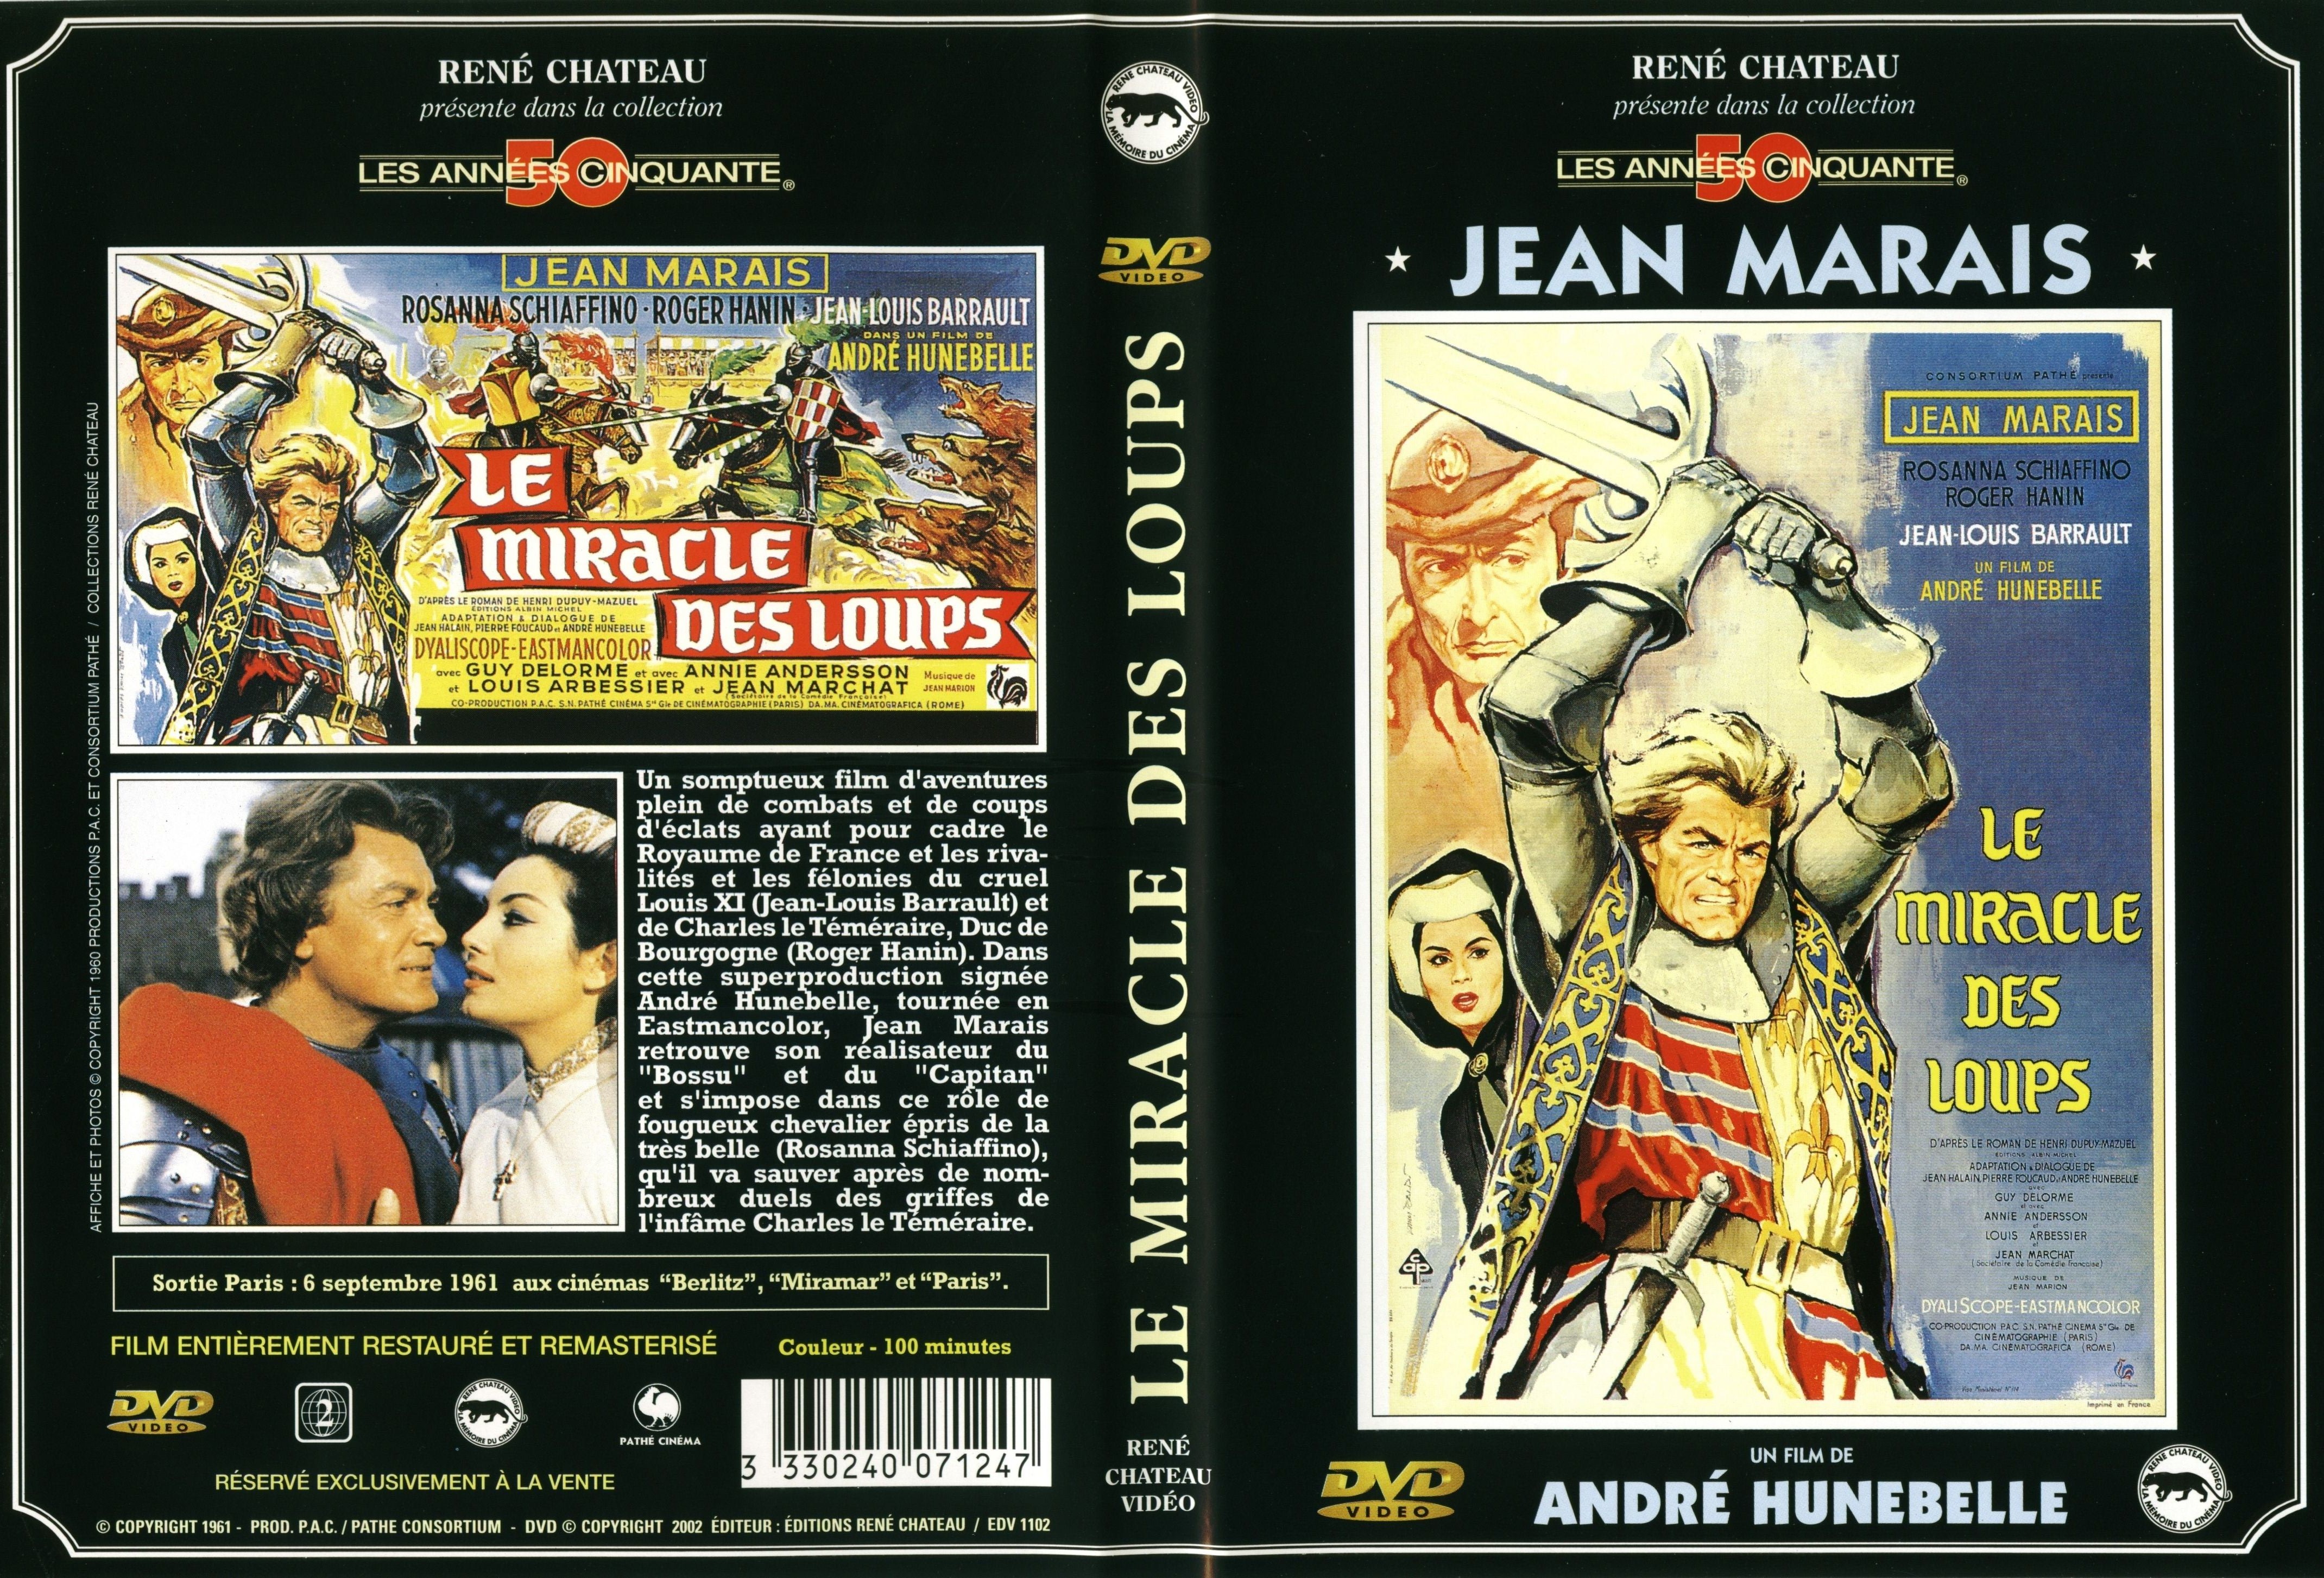 Jaquette DVD Le miracle des loups v2